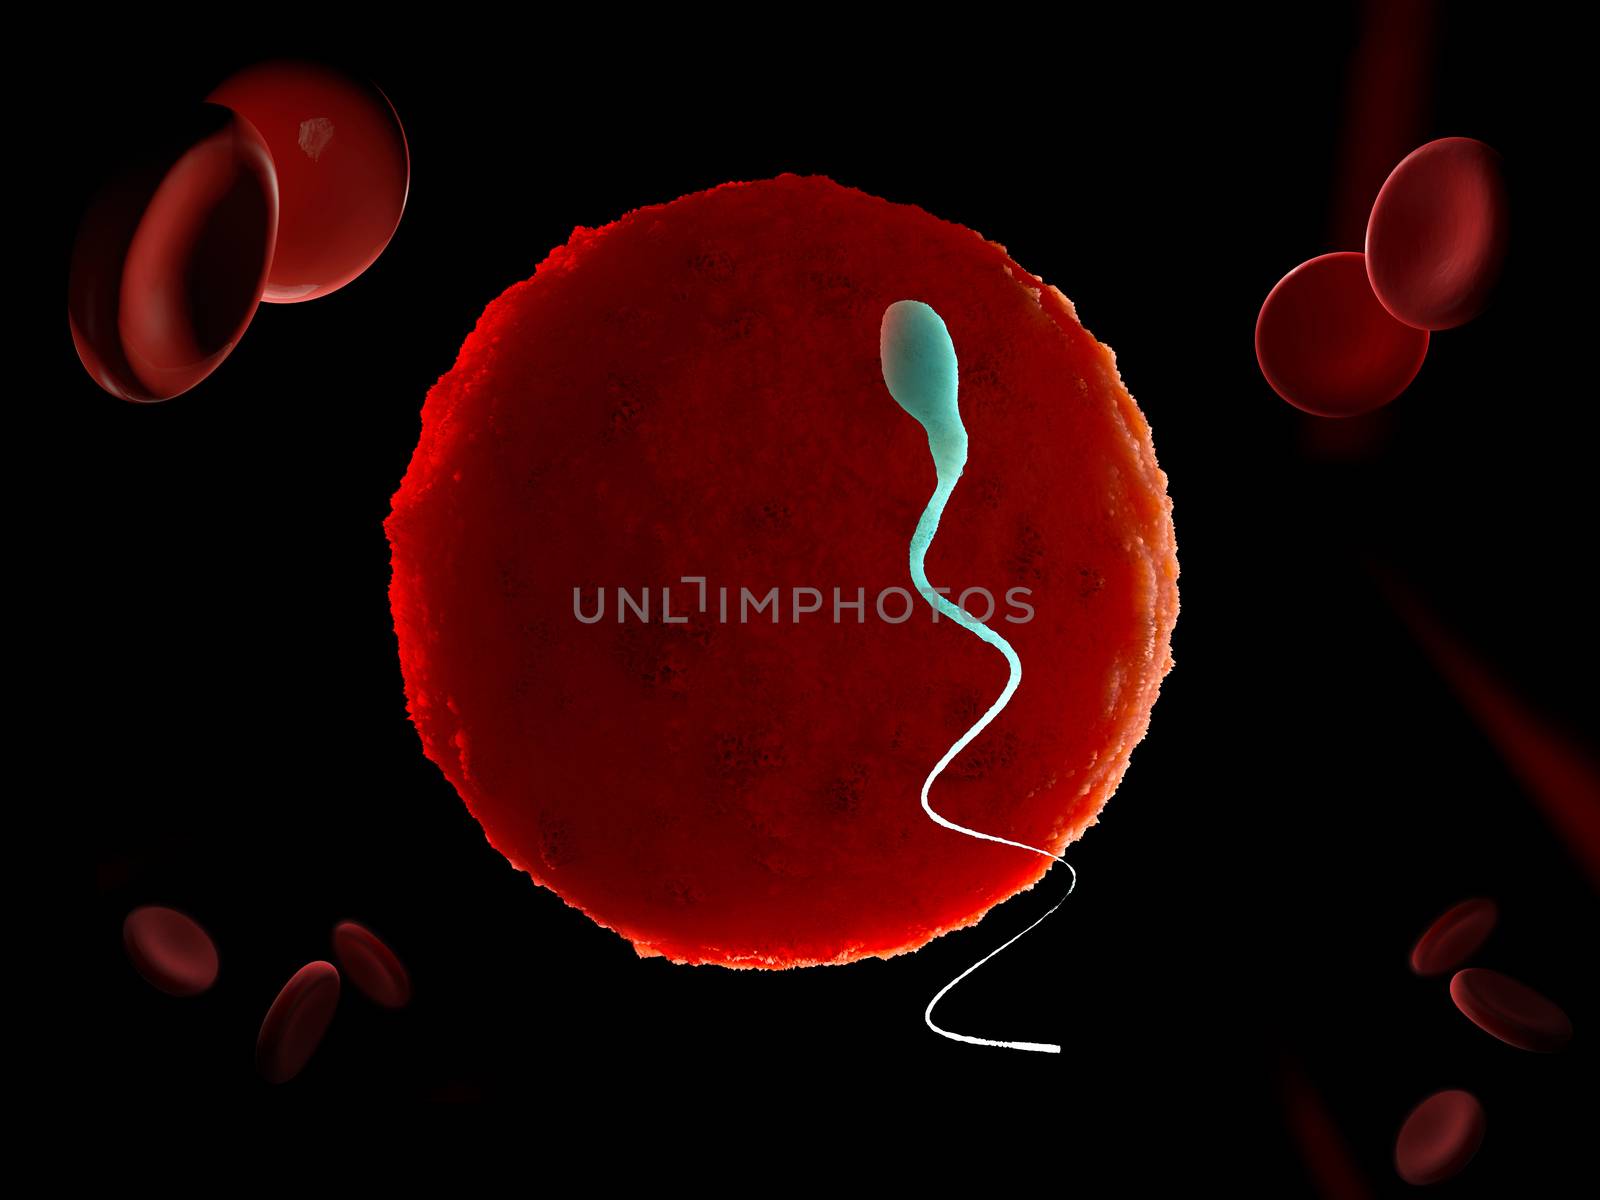 Sperm and egg cell. Natural fertilization. 3d illustration on black background.